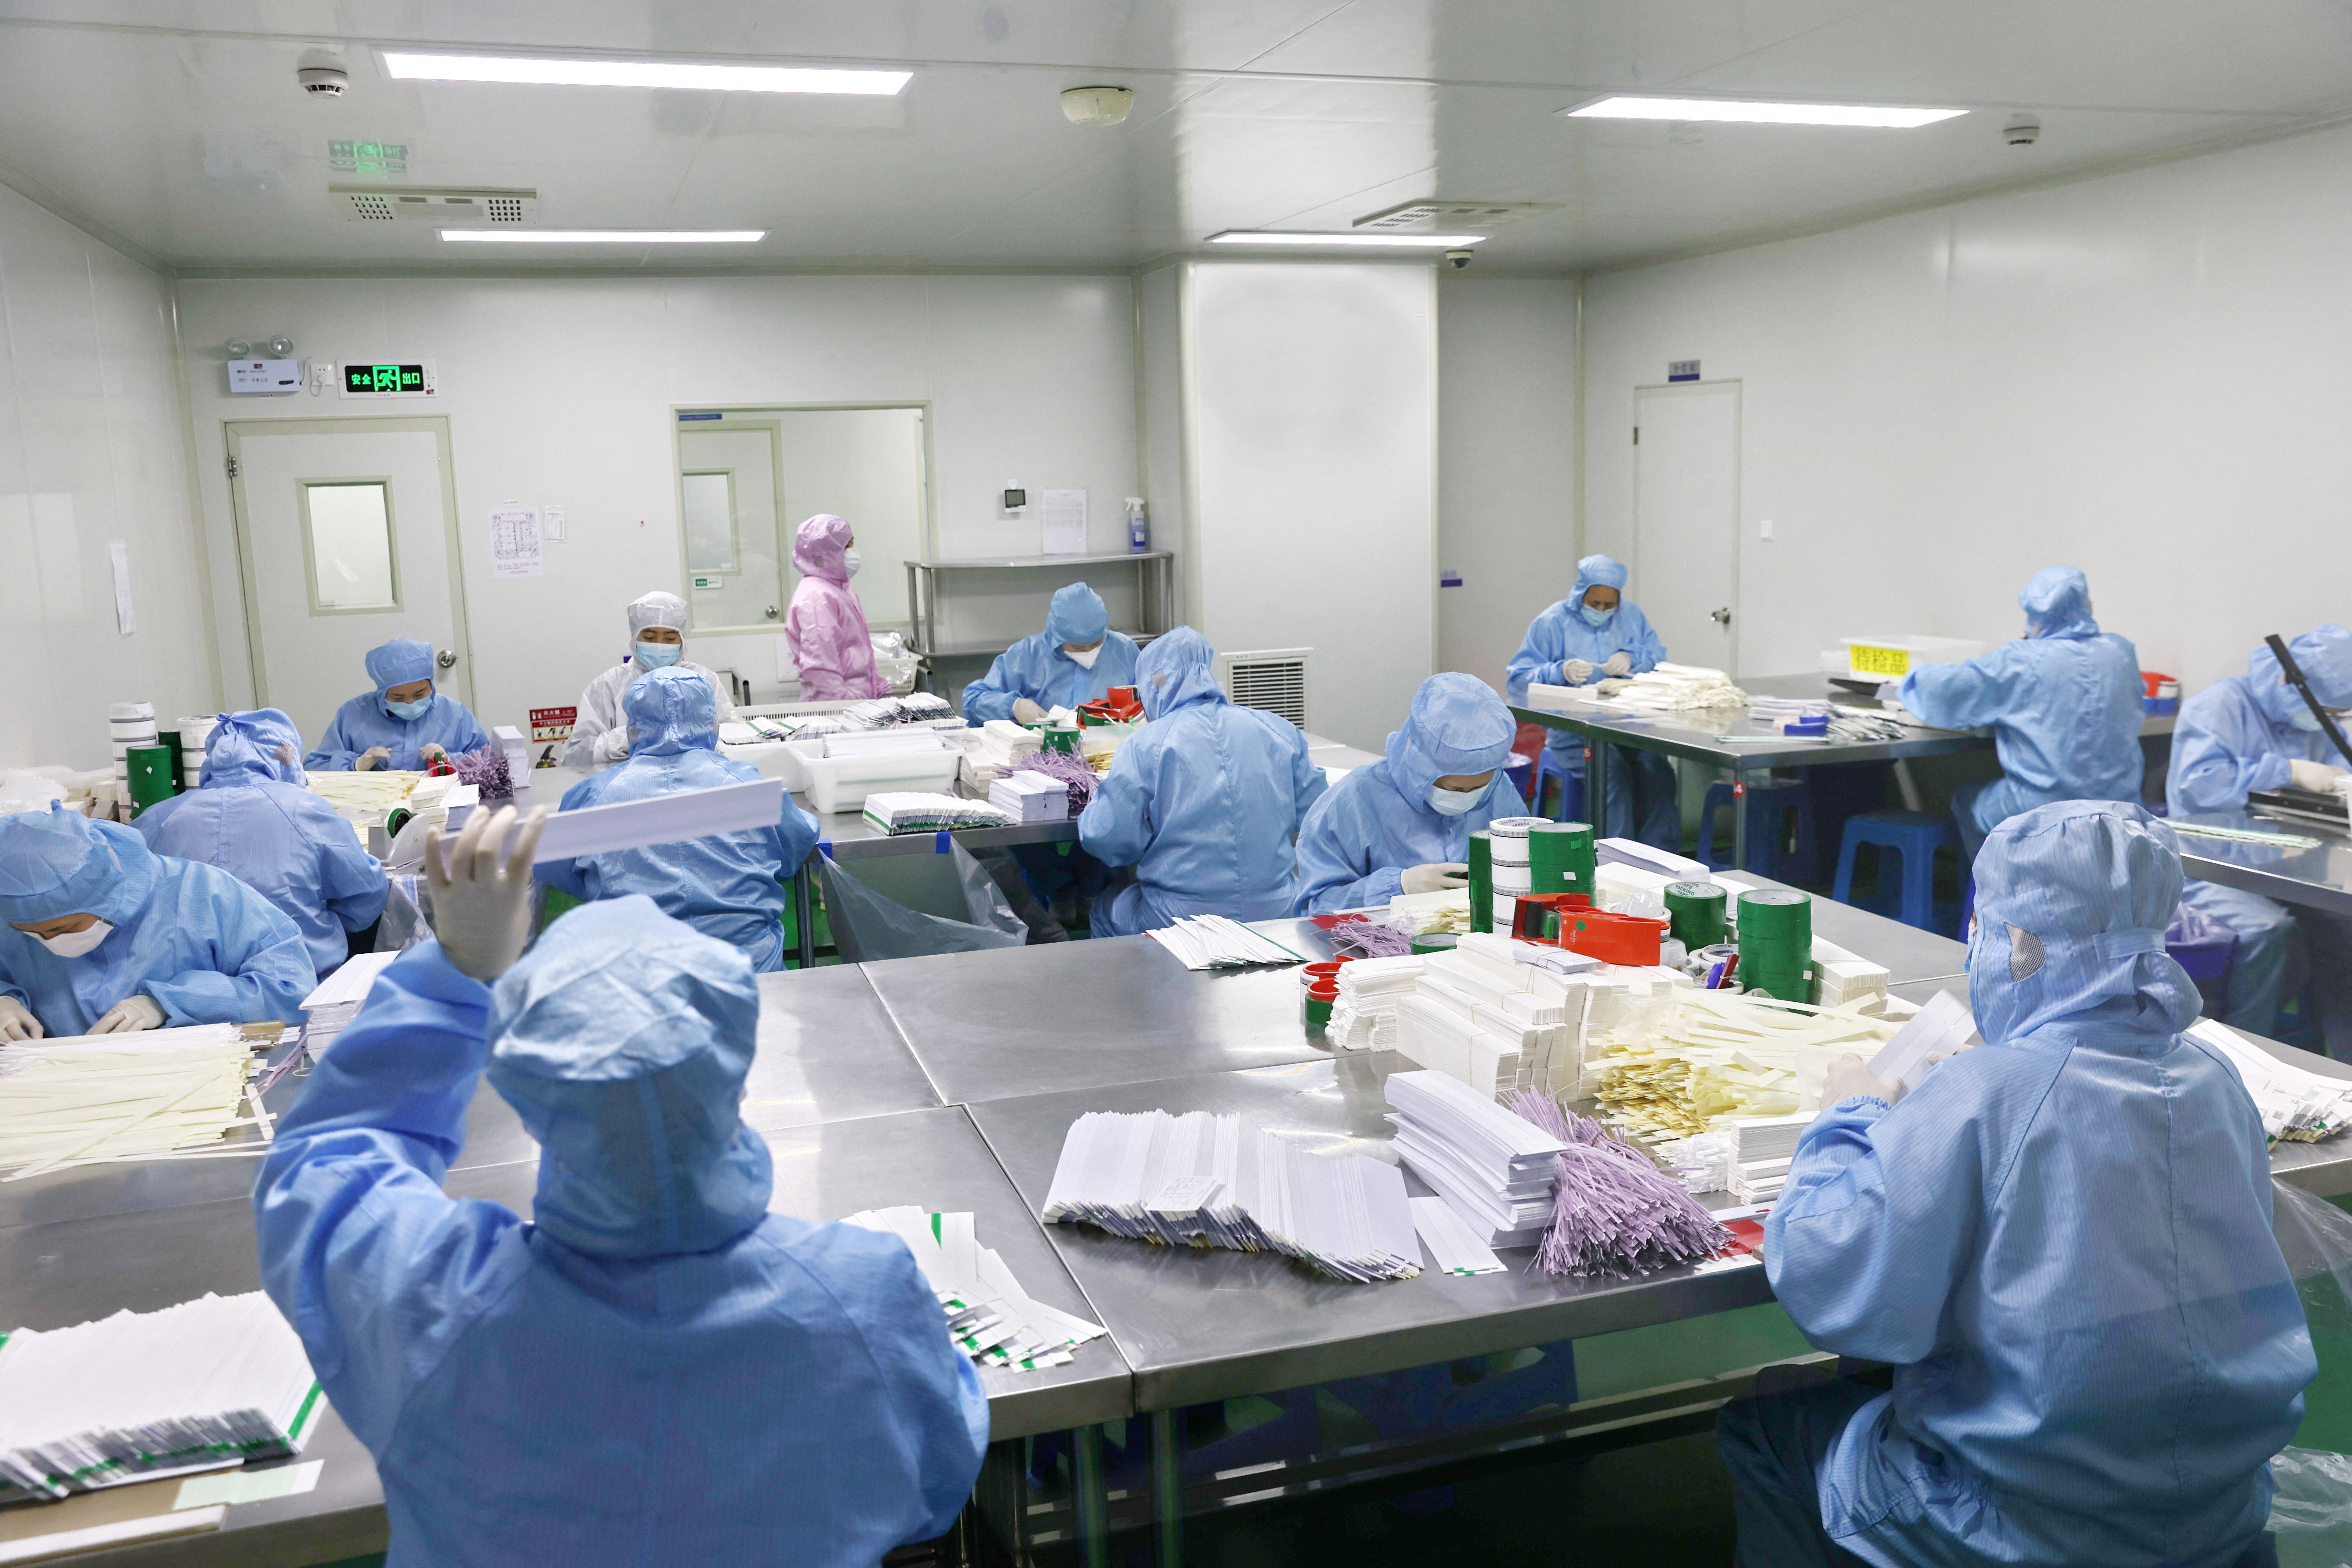 Trabajadores fabrican kits de prueba de antígenos para la enfermedad por coronavirus (COVID-19), en un taller en Nantong, provincia de Jiangsu, China